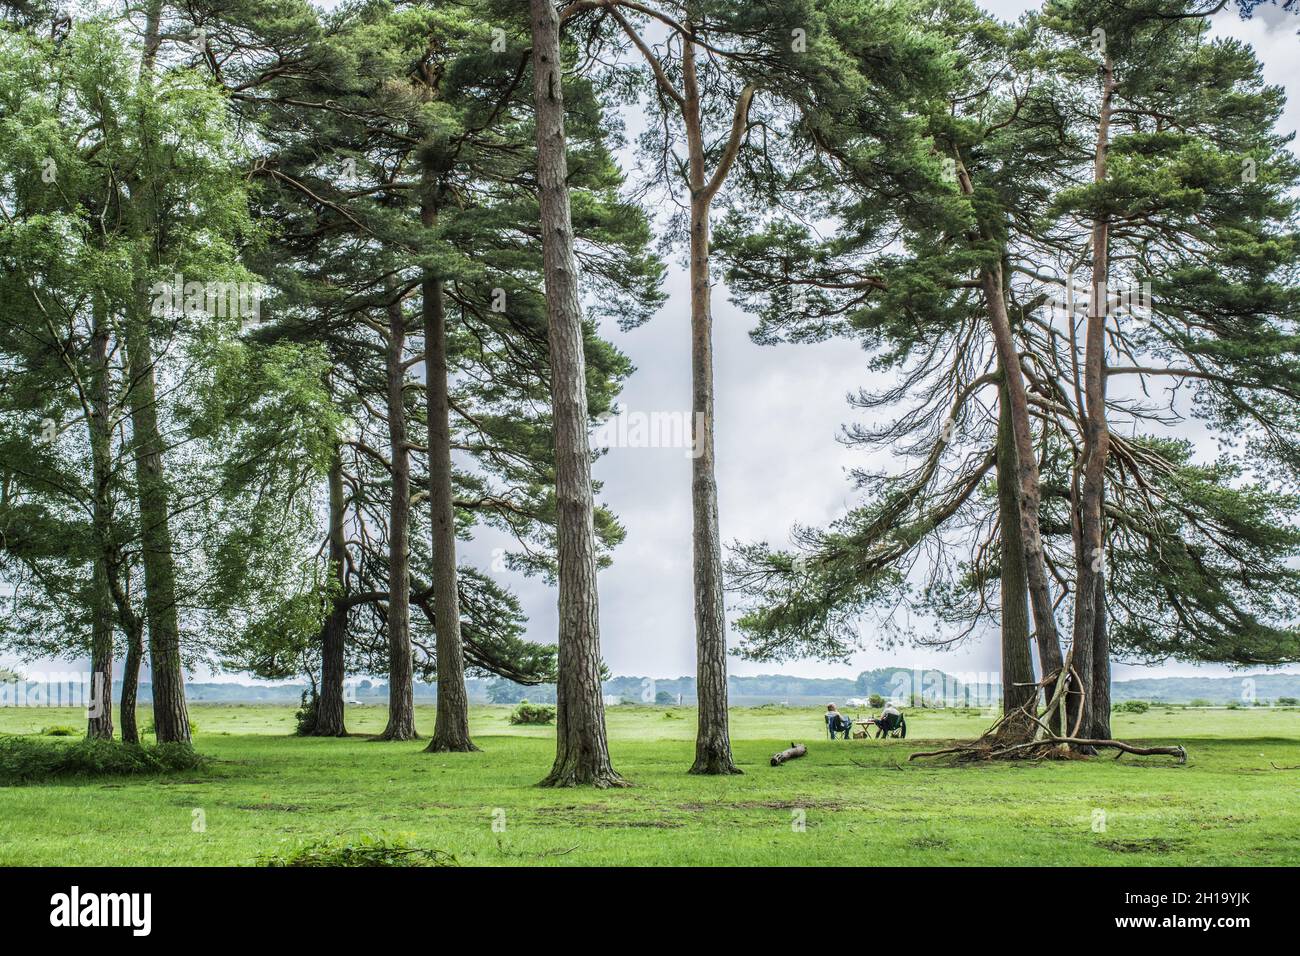 Menschen auf dem Picknick zwischen riesigen Bäumen Stockfoto